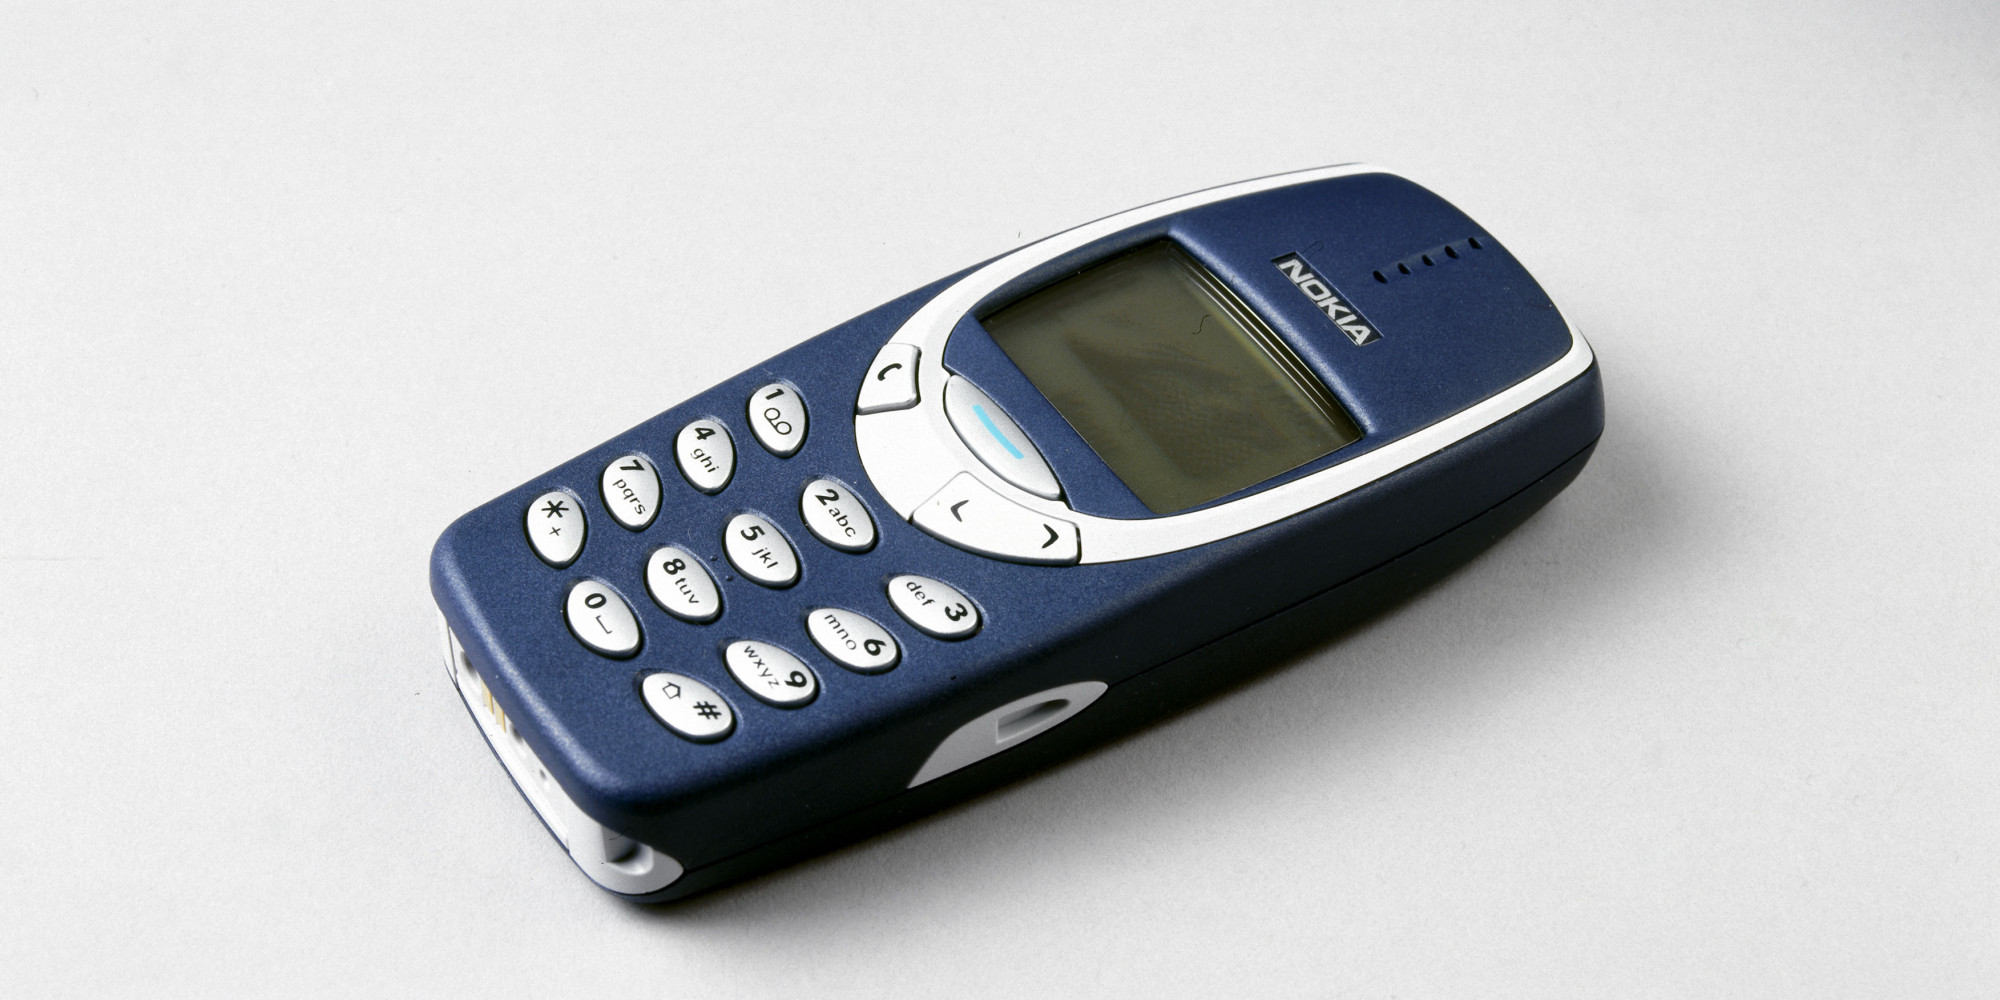 Los nuevos teléfonos de Nokia no son tan inteligentes pero quieren cautivar  con su simpleza - La Tercera